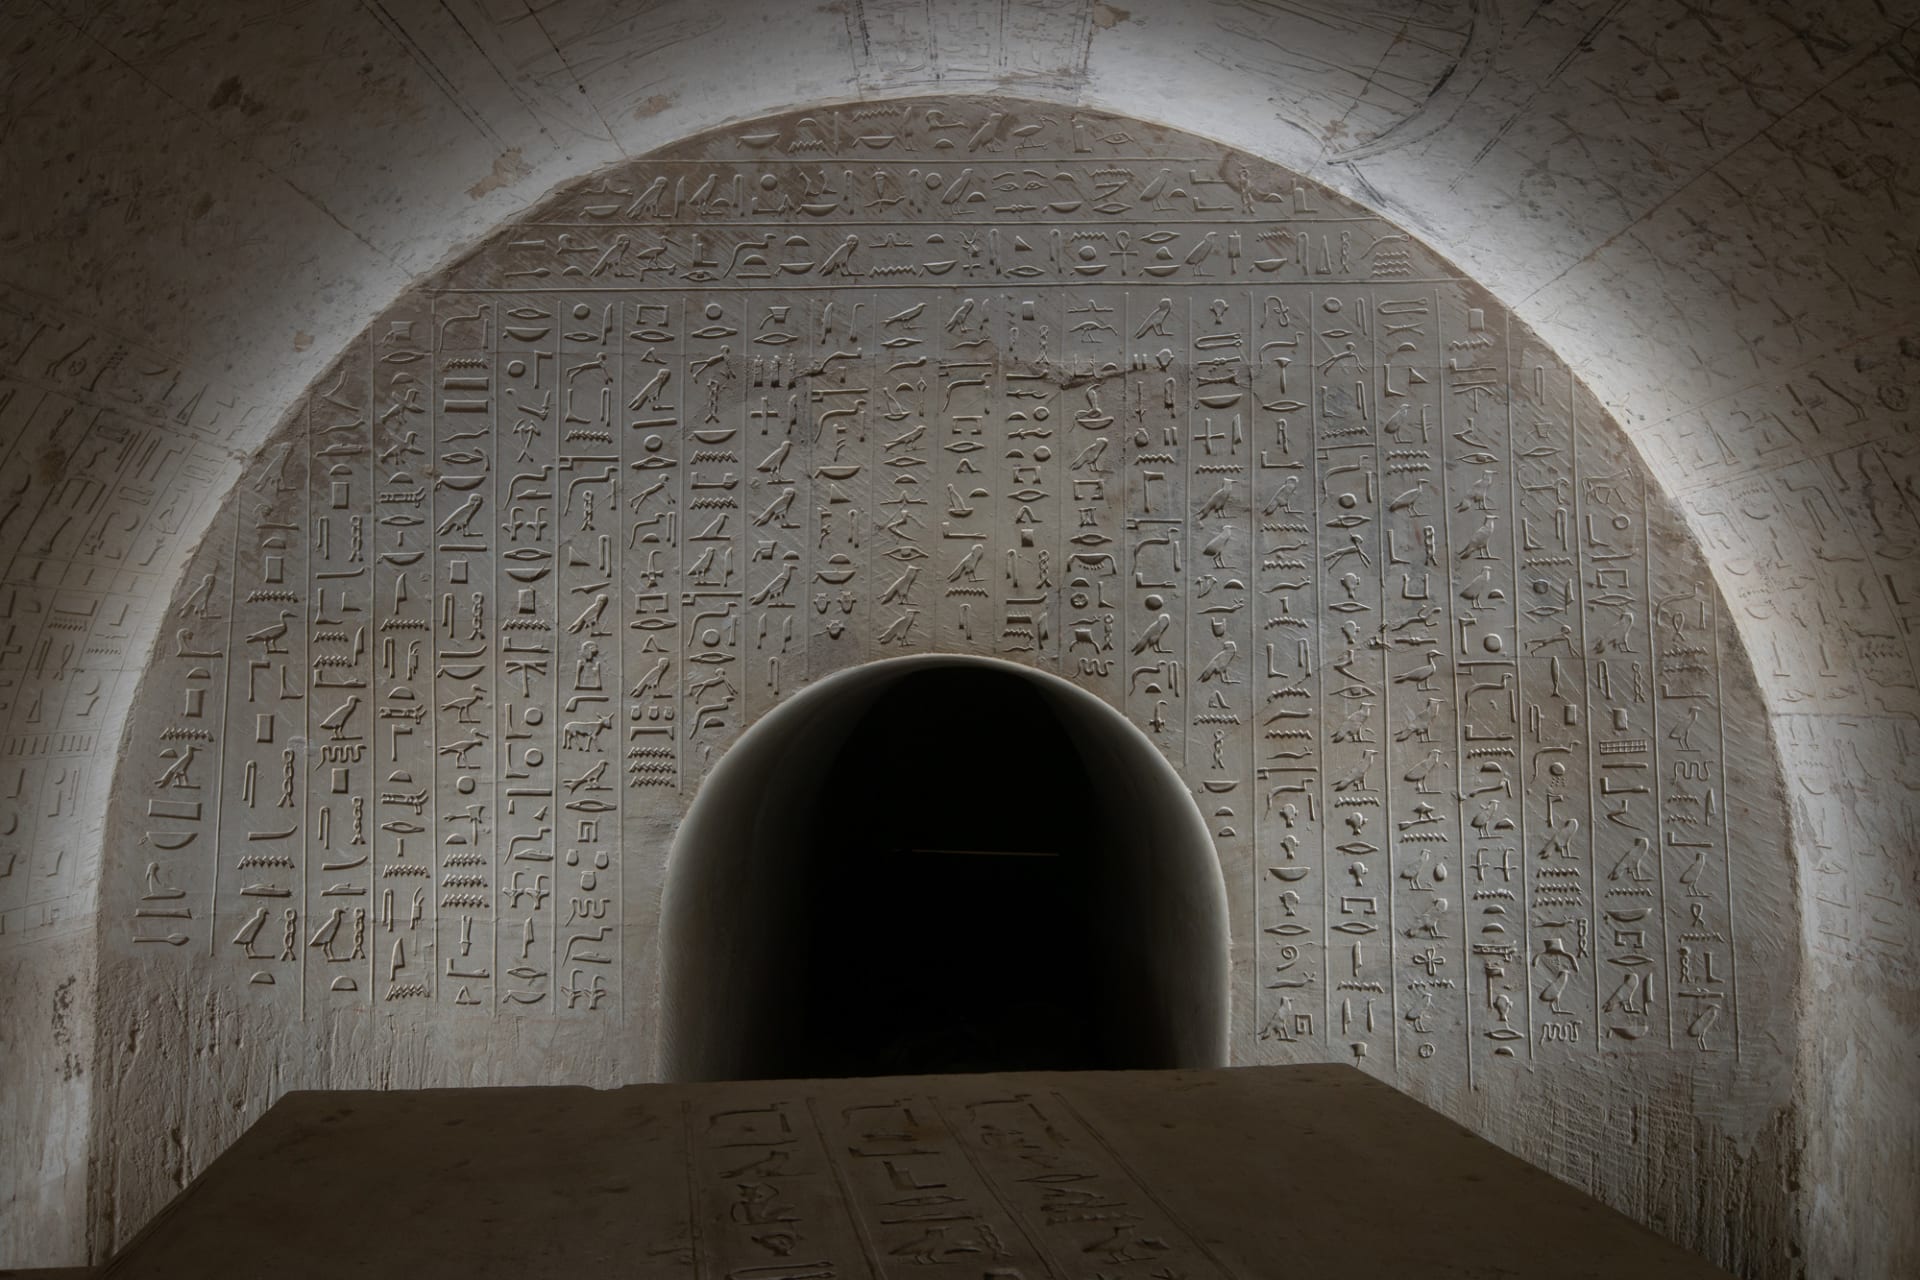 Čeští egyptologové objevili bohatě zdobenou hrobku.